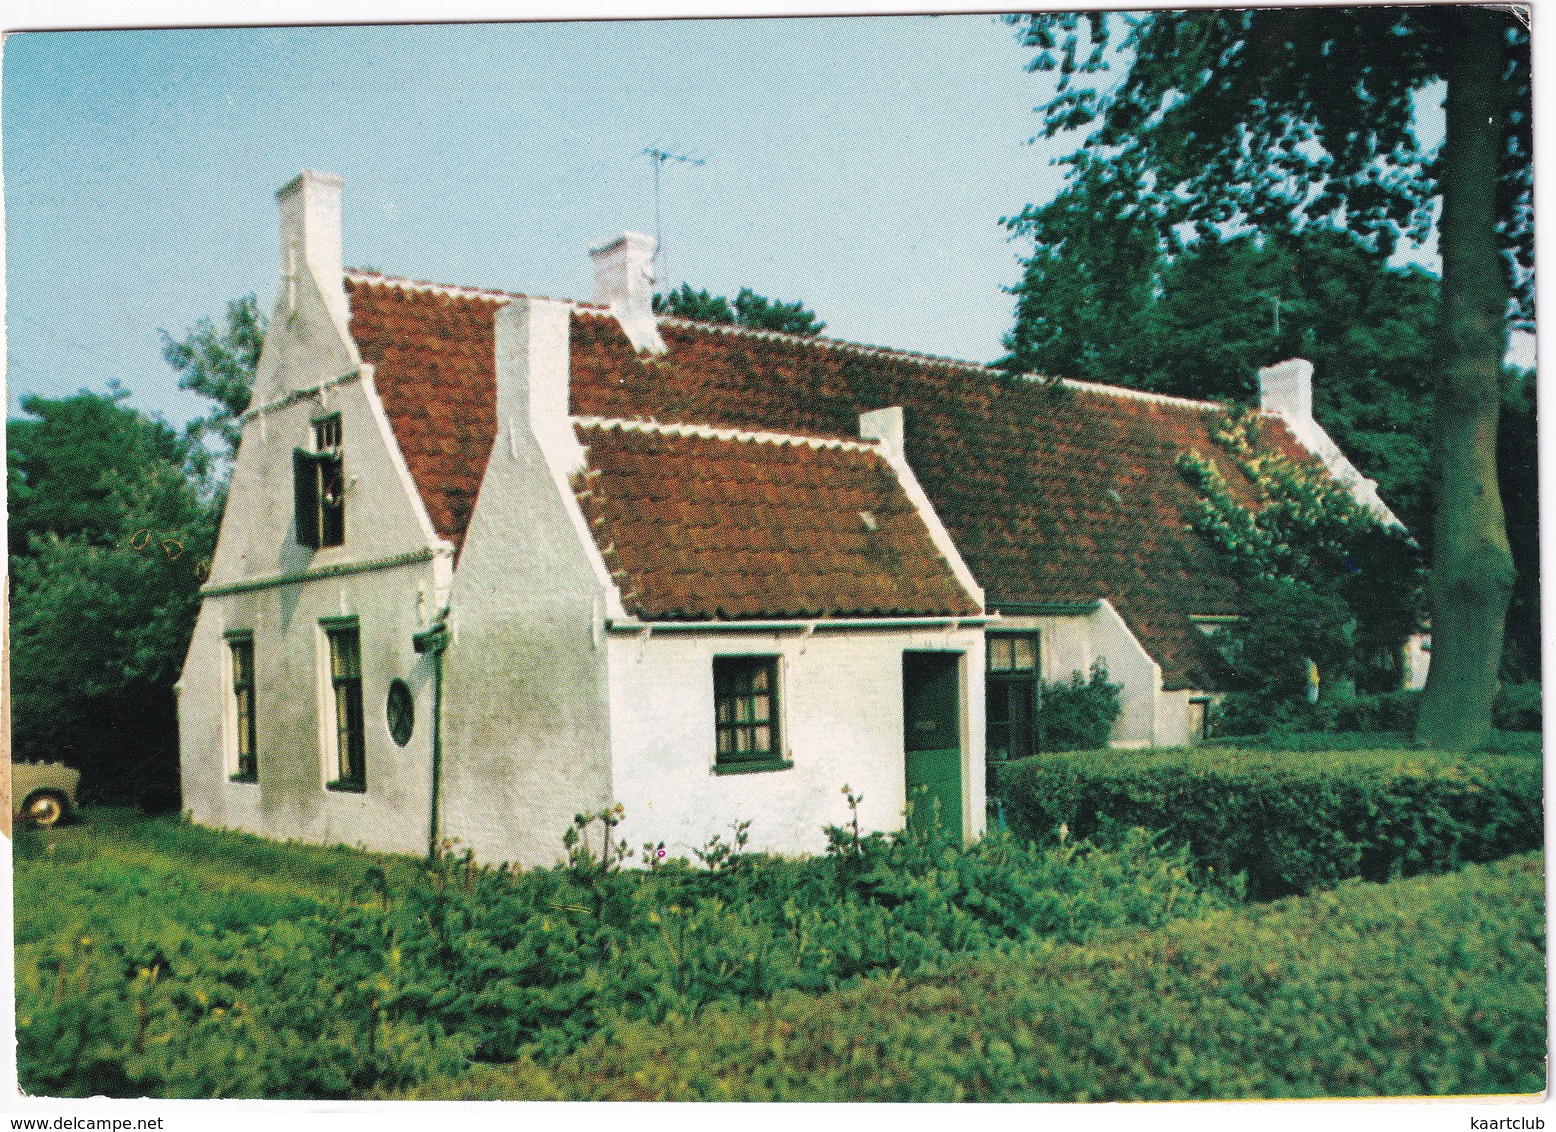 Amelander Huisje  - (Wadden, Holland) - Ameland